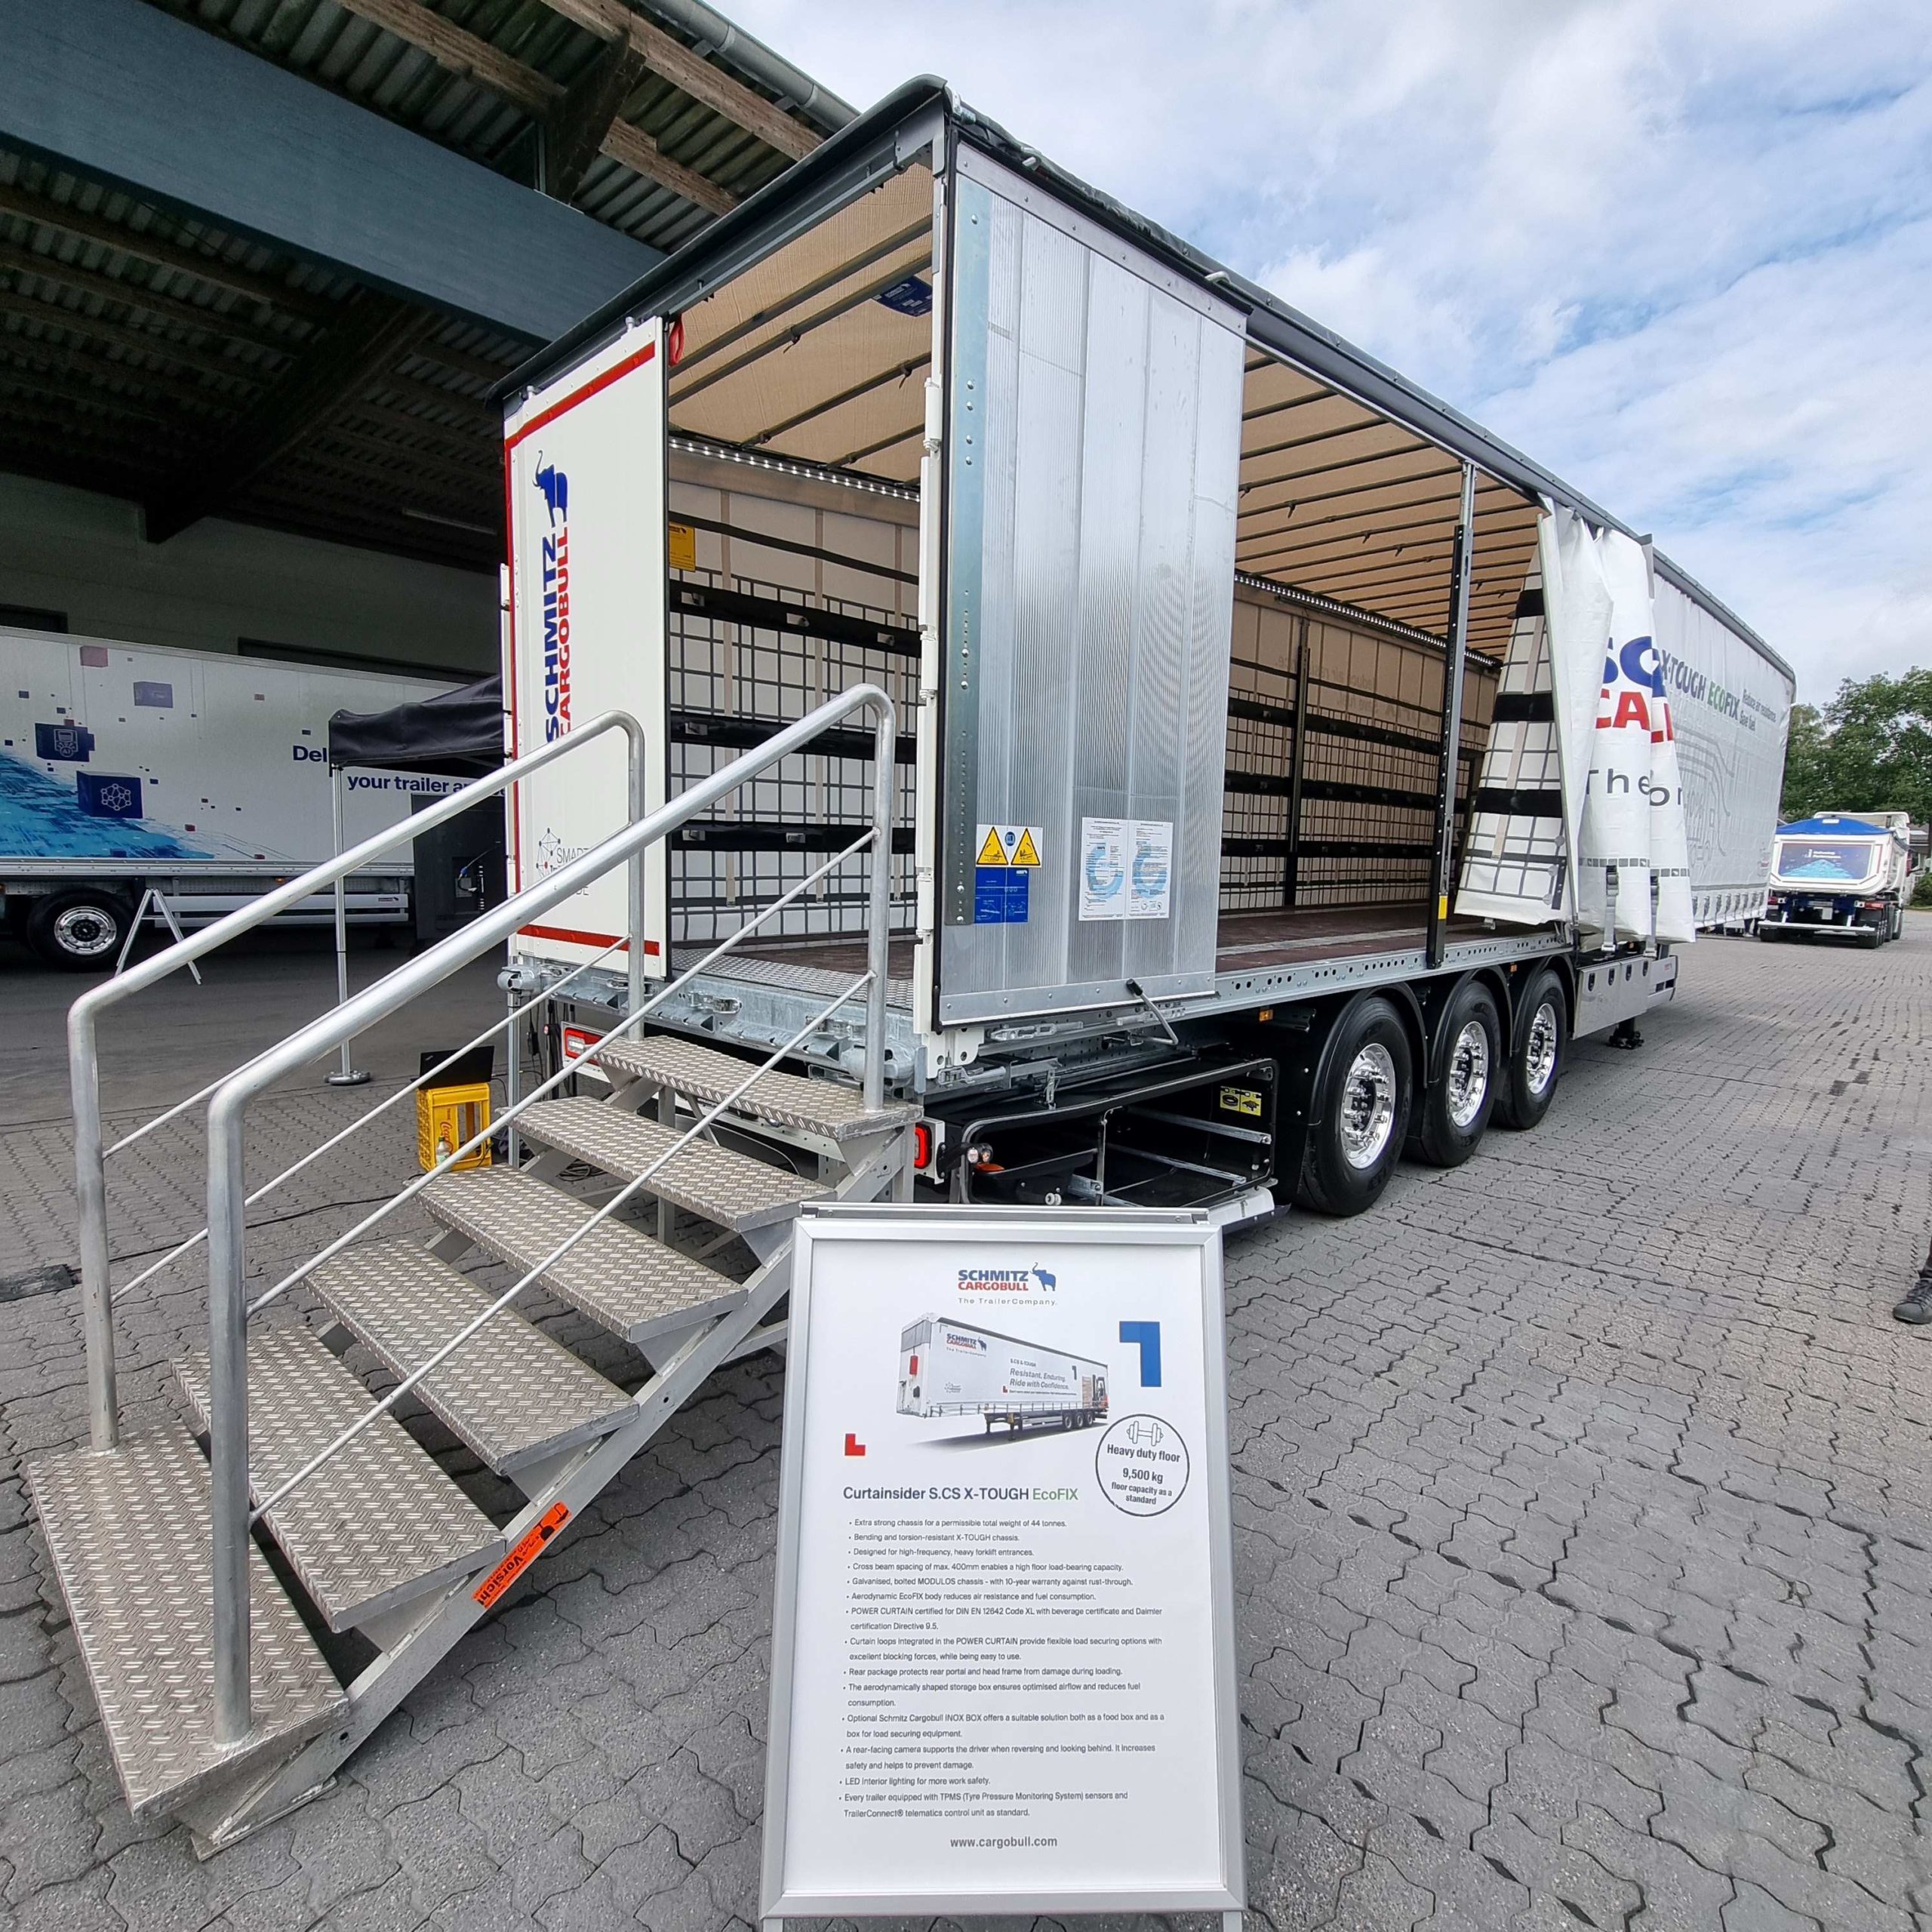 Dismiuir la tara, peso en vacío, e incrementar la eficiencia aerodinámica son algunas de lasmejoras en los semis de Schmitz Cargobull para disminuir los costes y las emisiones en el transporte.